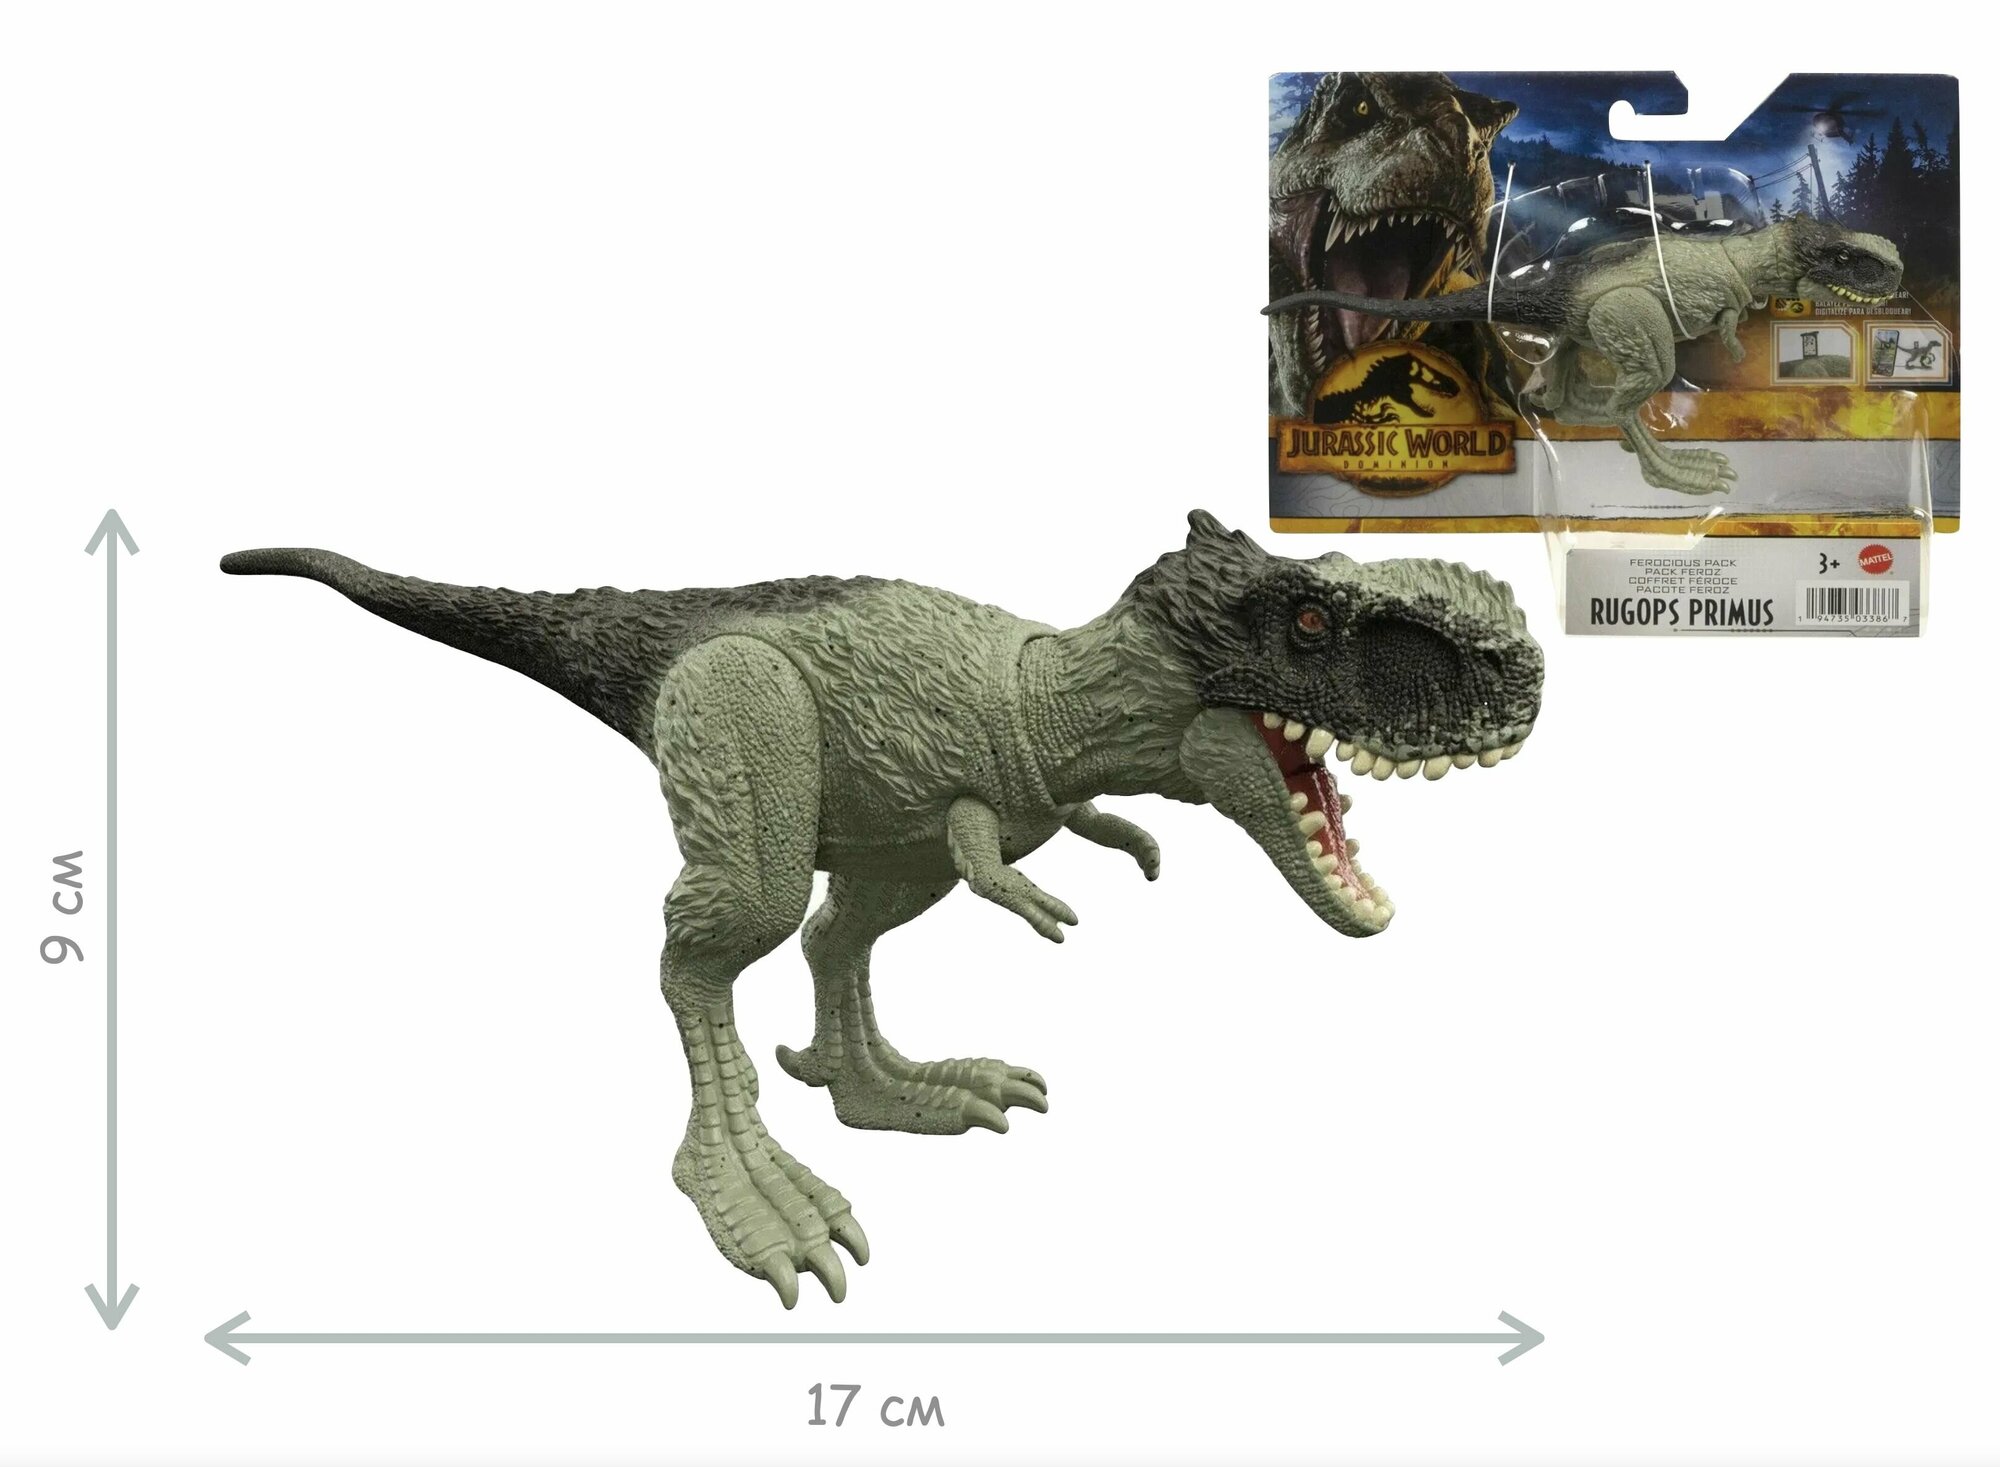 Фигурка динозавра ругопс примус Мир Юрского периода серия Свирепая стая Jurassic World Rugops Primus Ferocious Pack HDX28 Mattel